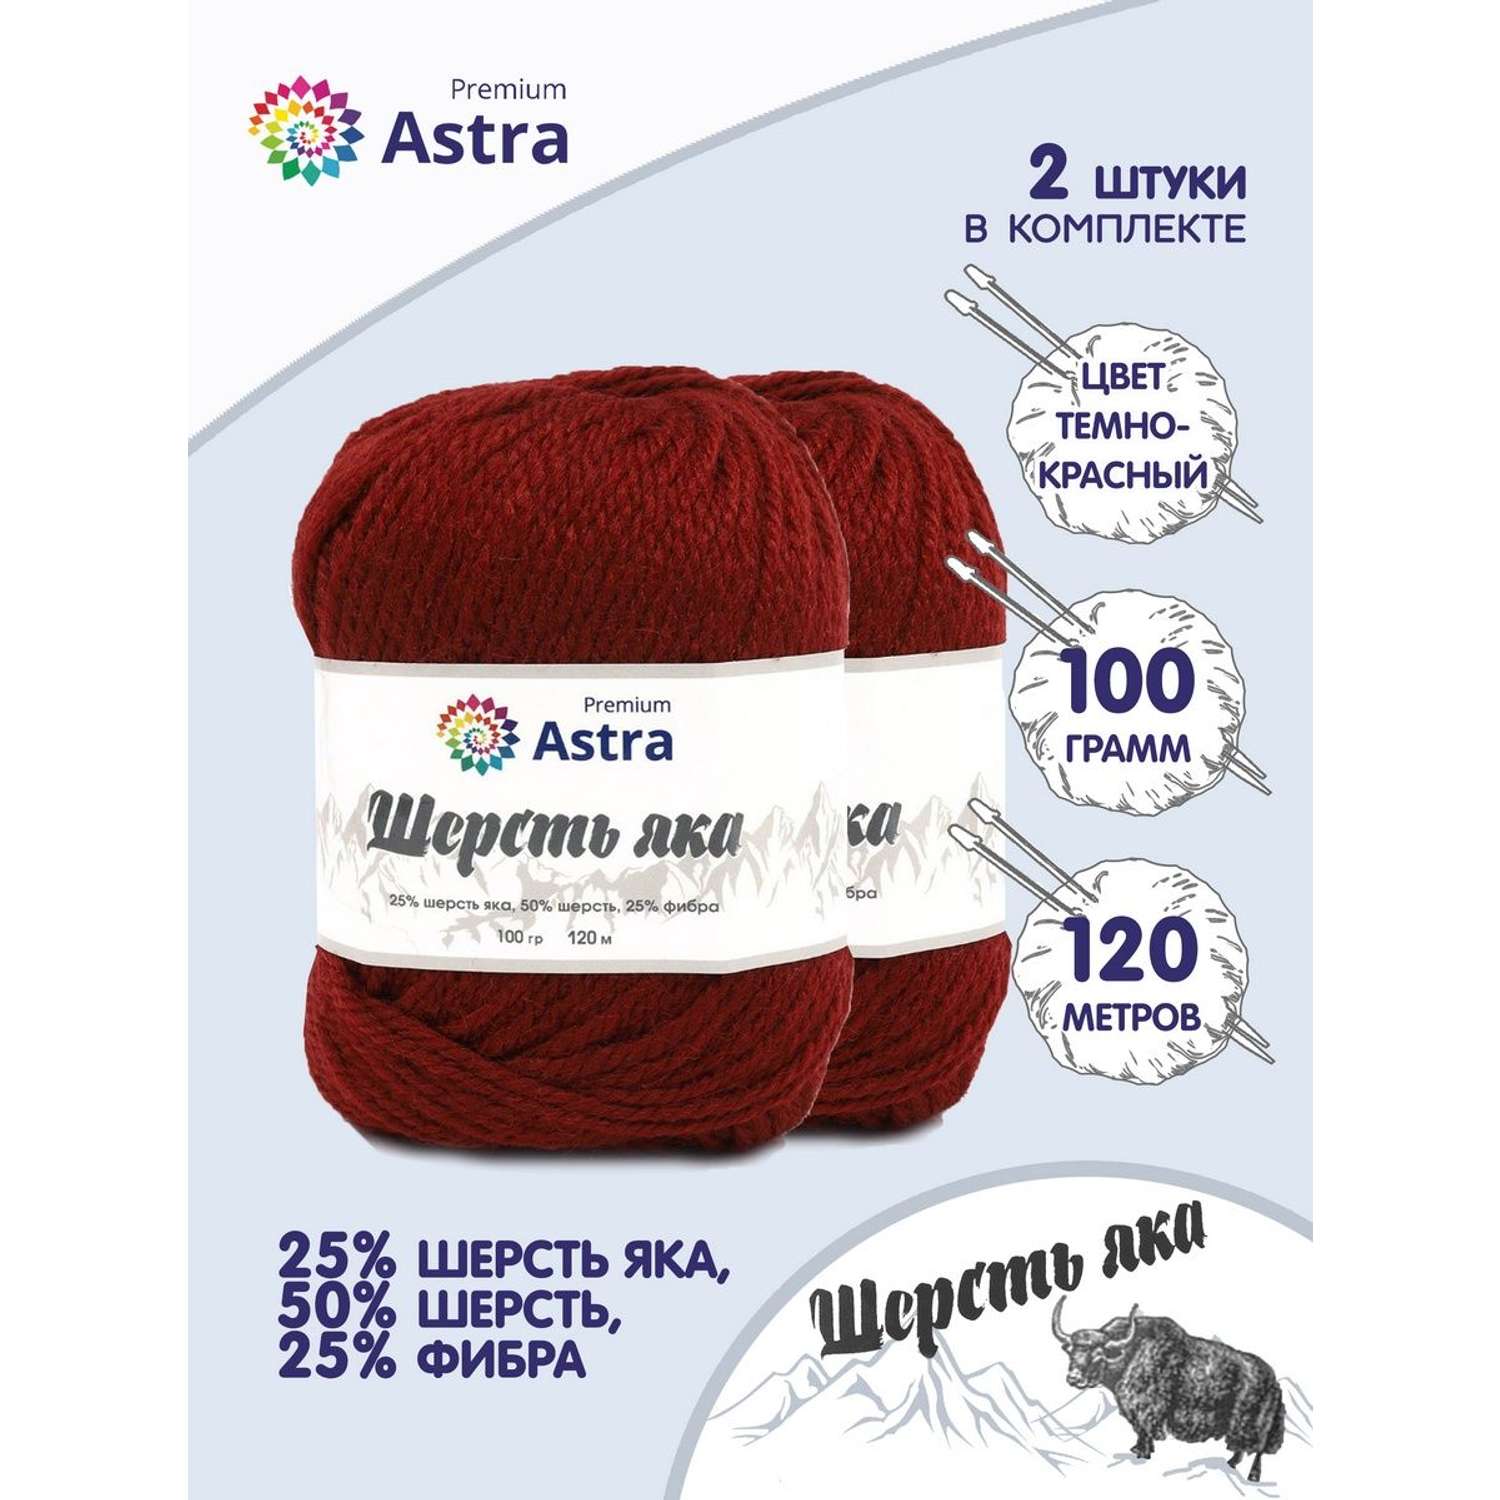 Пряжа Astra Premium Шерсть яка Yak wool теплая мягкая 100 г 120 м 25 темно-красный 2 мотка - фото 1